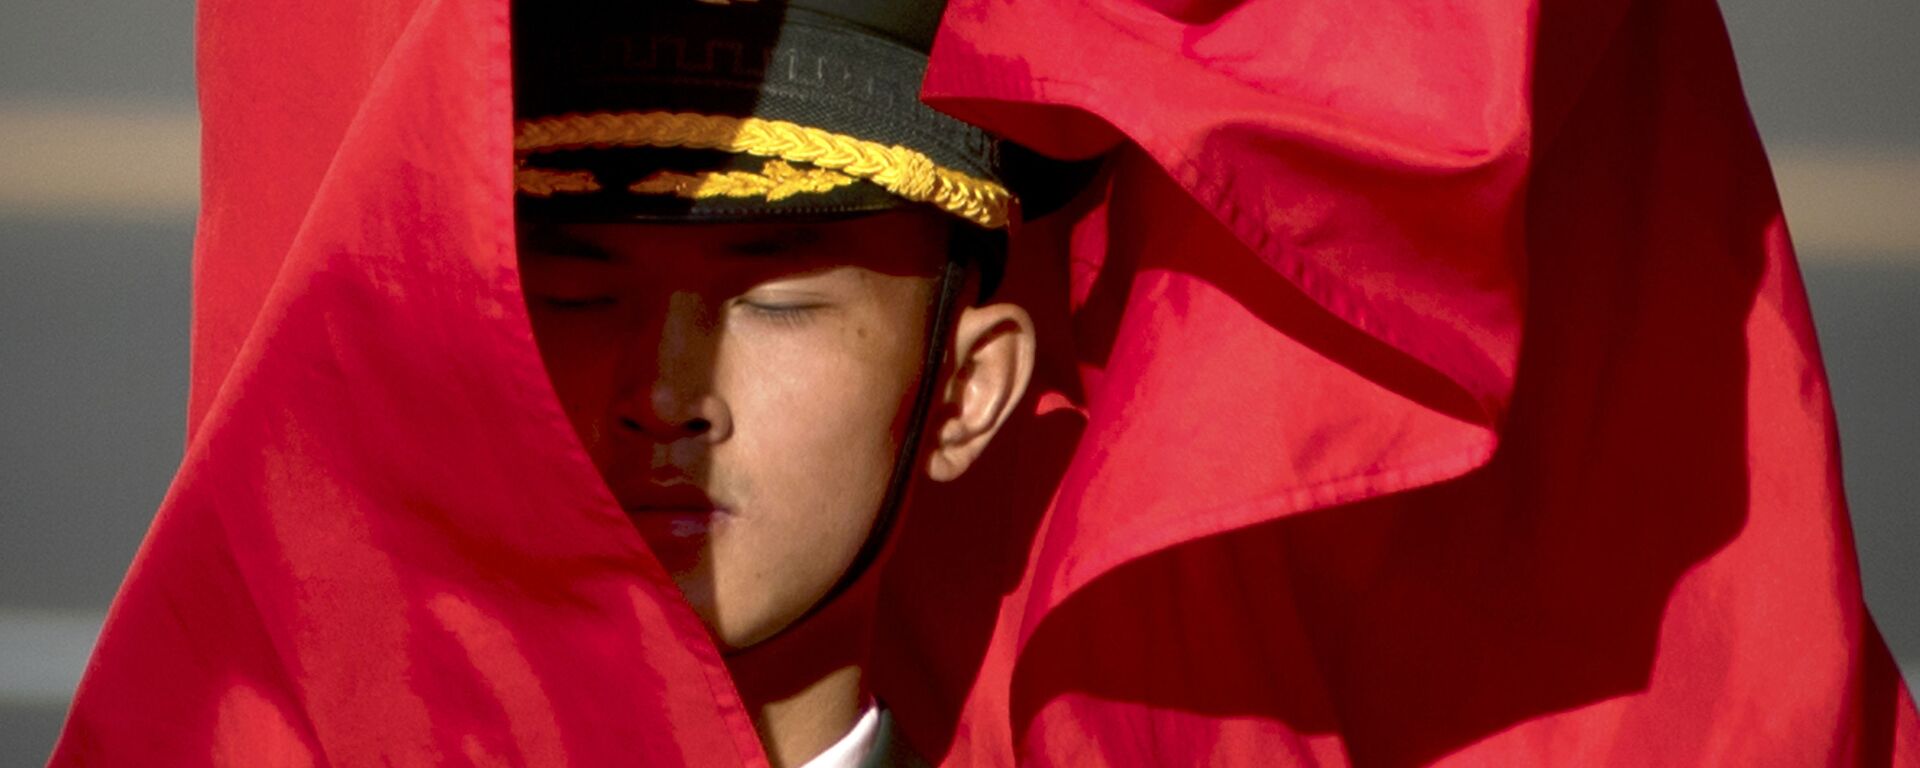 Đội Cảnh vệ với cờ nghi thức trong lễ đón Chủ tịch nước Việt Nam Trần Đại Quang  ở Trung Quốc - Sputnik Việt Nam, 1920, 07.10.2021